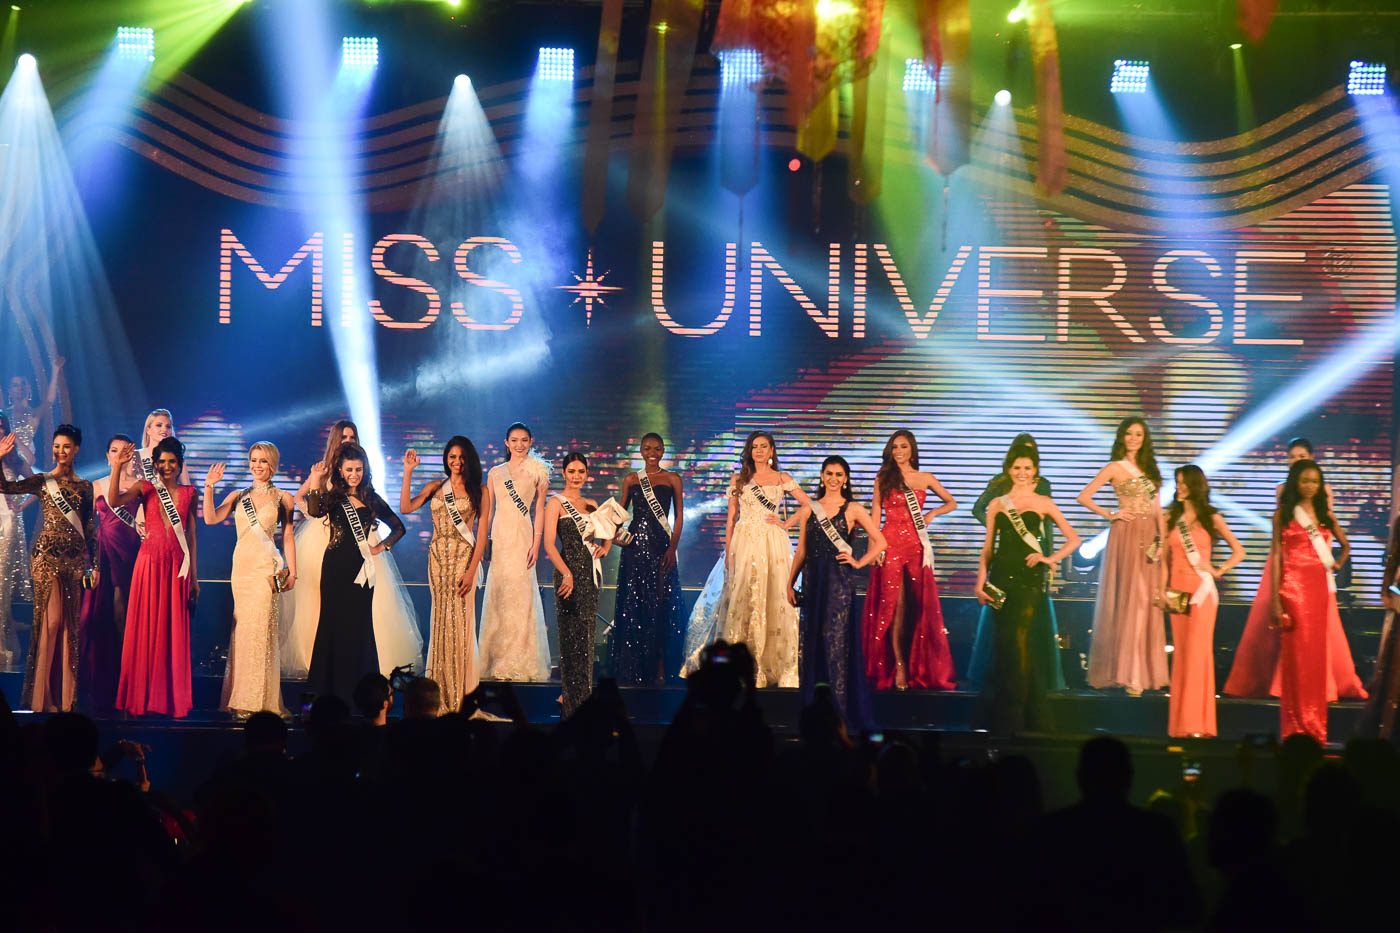 5 hal tentang babak ‘Preliminary’ di ajang ‘Miss Universe 2016’